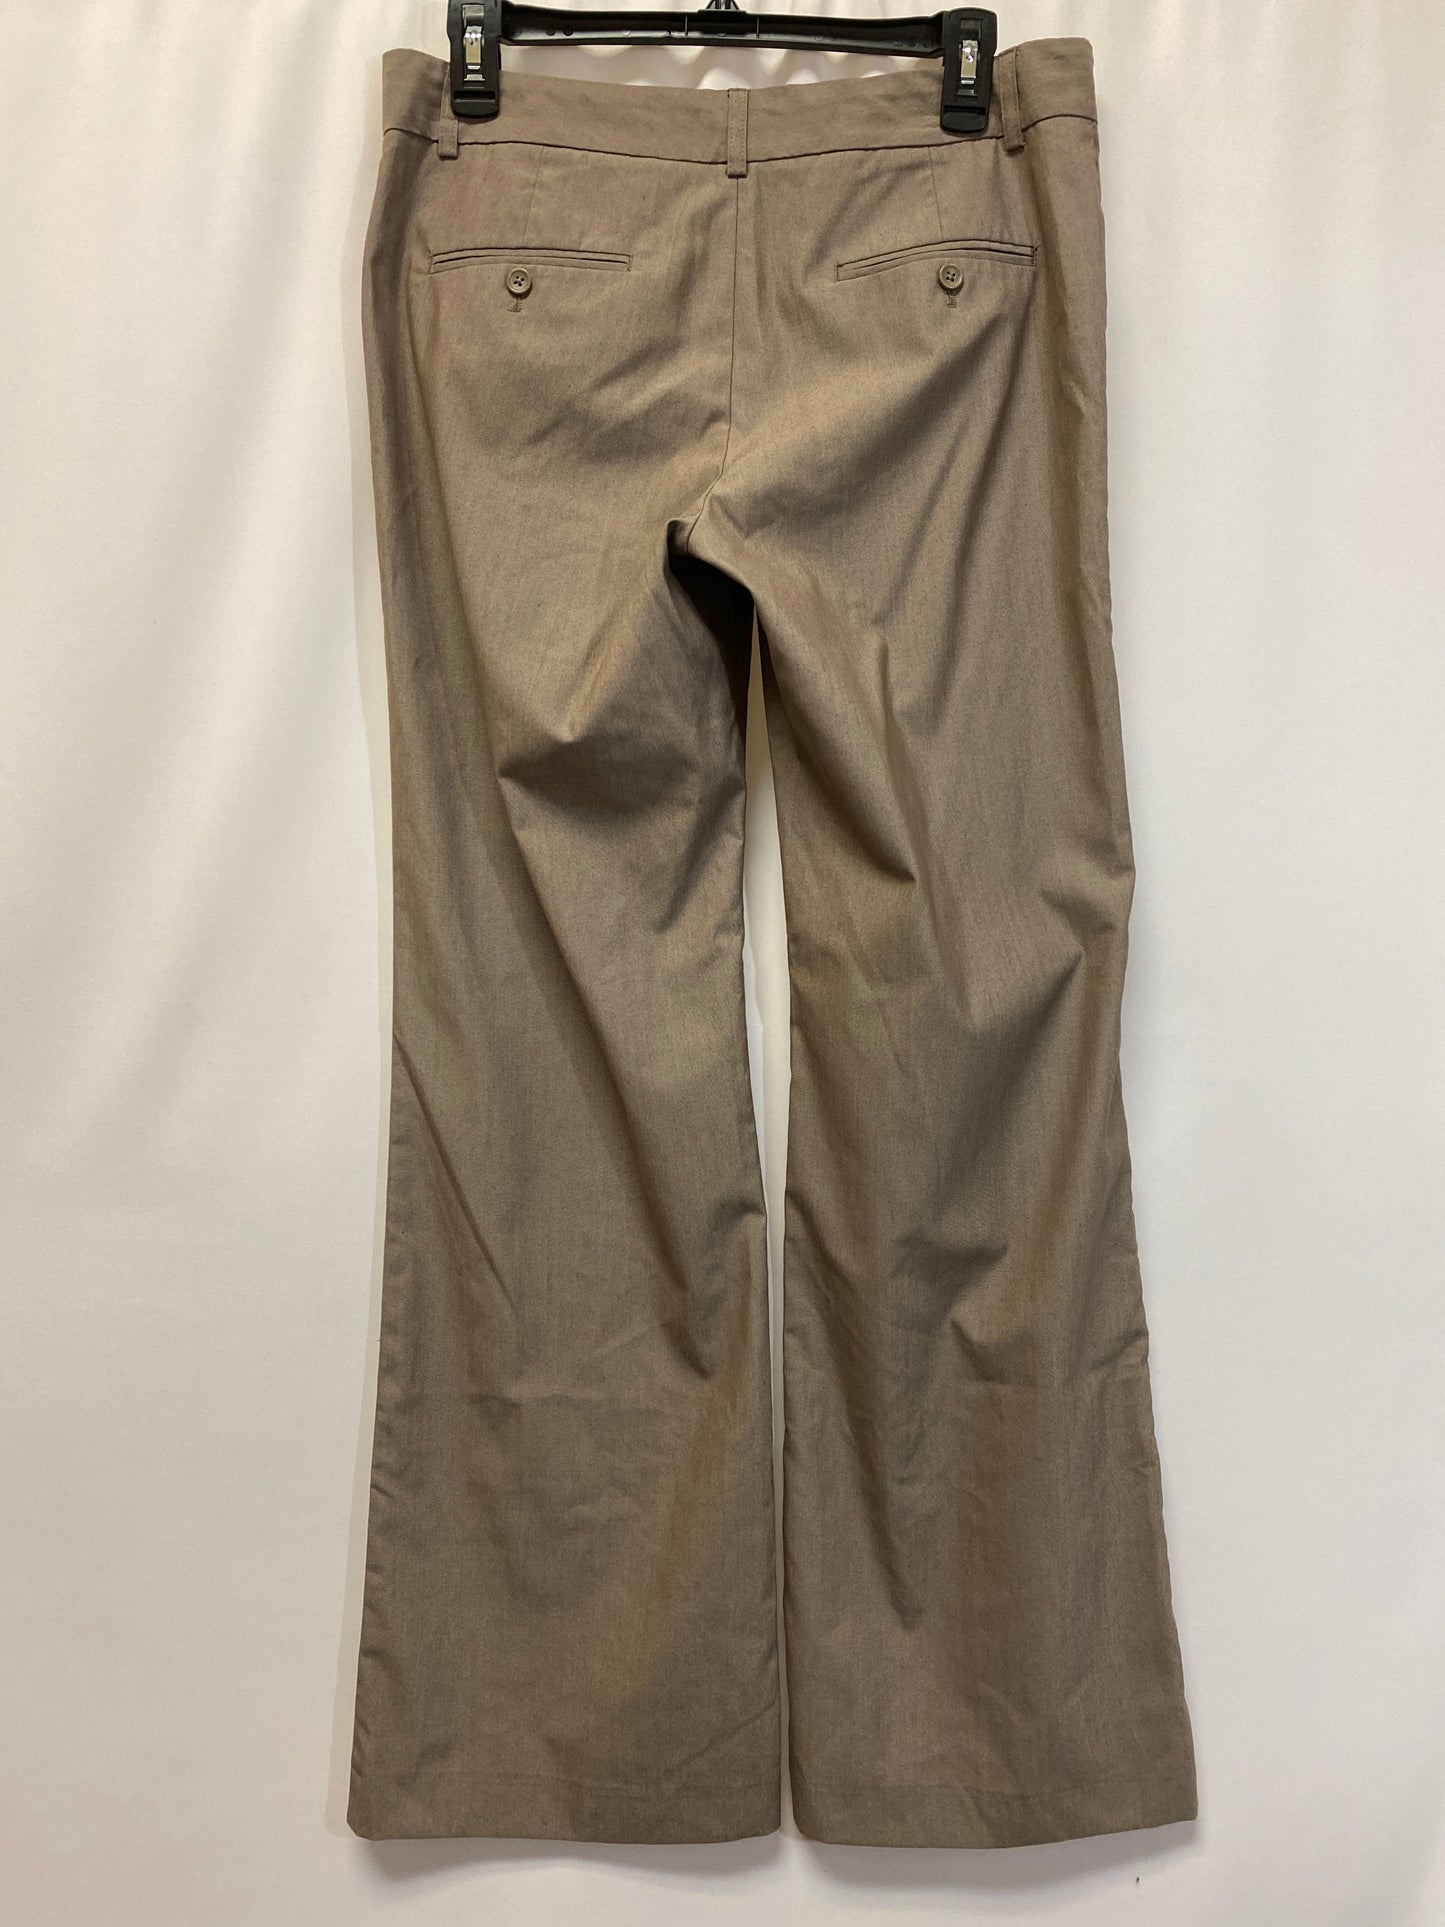 Tan Pants Dress Express, Size 8